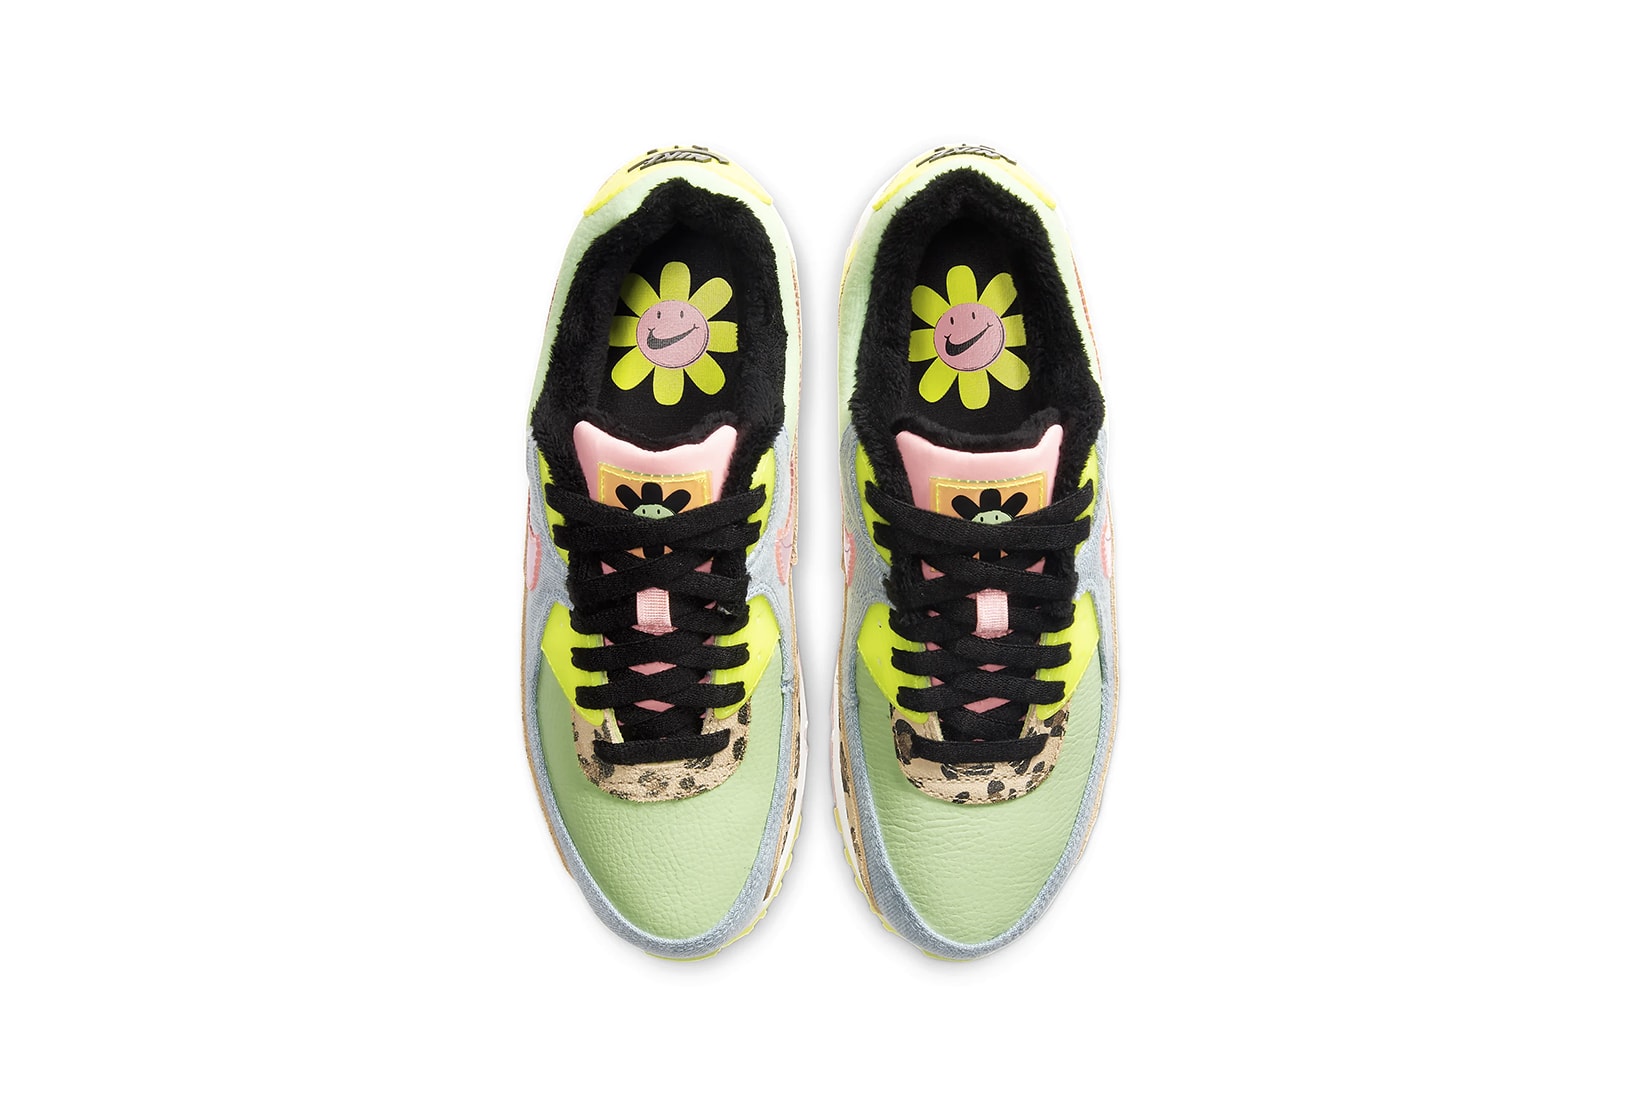 nike air max 90 womens sneakers leopard print pastel blue neon green pink shoes footwear sneakerhead